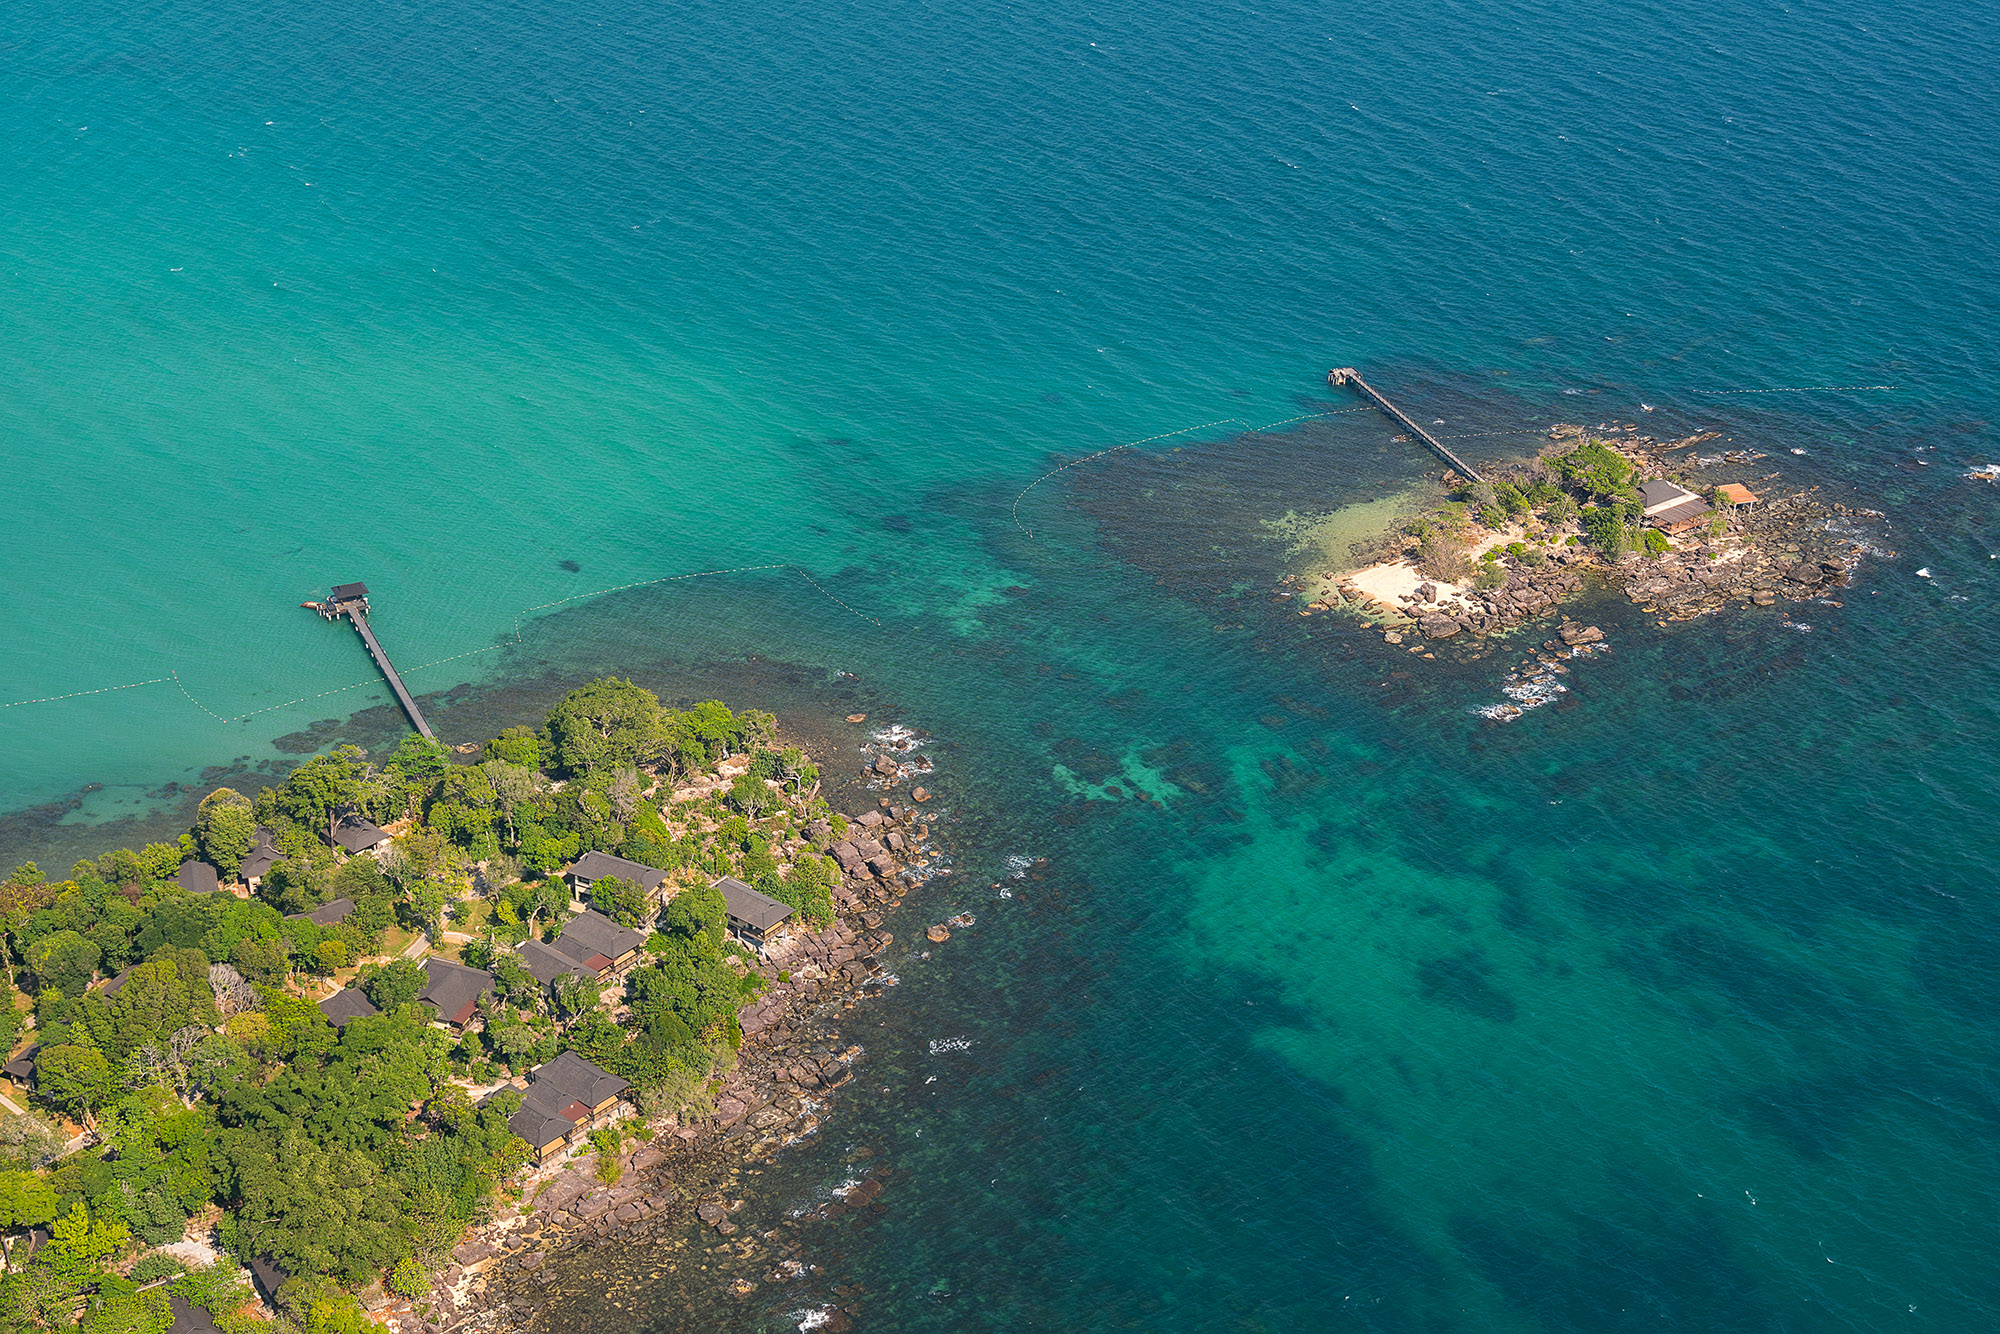  Trải dài trên mũi đất Móng Tay, phía bắc đảo Phú Quốc, Nam Nghi resort với 39 villa hướng biển cùng 63 phòng khách sạn nằm xen kẽ giữa một vùng rừng xanh trù phú và được bao bọc bởi 3 mặt biển, 2 hòn đảo nhỏ riêng biệt, tạo ra địa thế đắt giá của khu nghỉ dưỡng này.